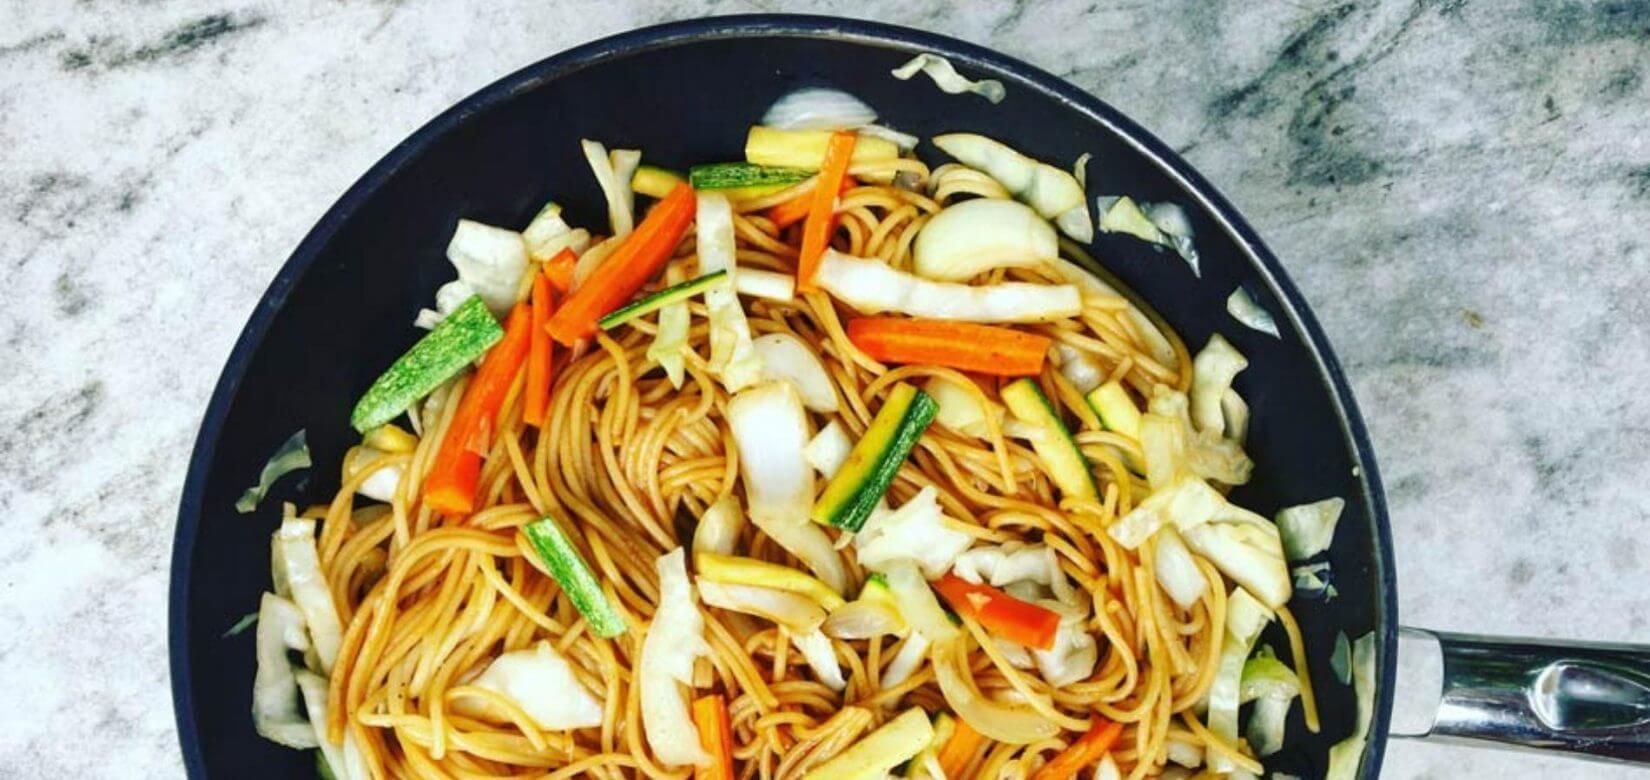 Με αυτή τη συνταγή τα παιδιά σας θα λατρέψουν το κινέζικο στο σπίτι σας!